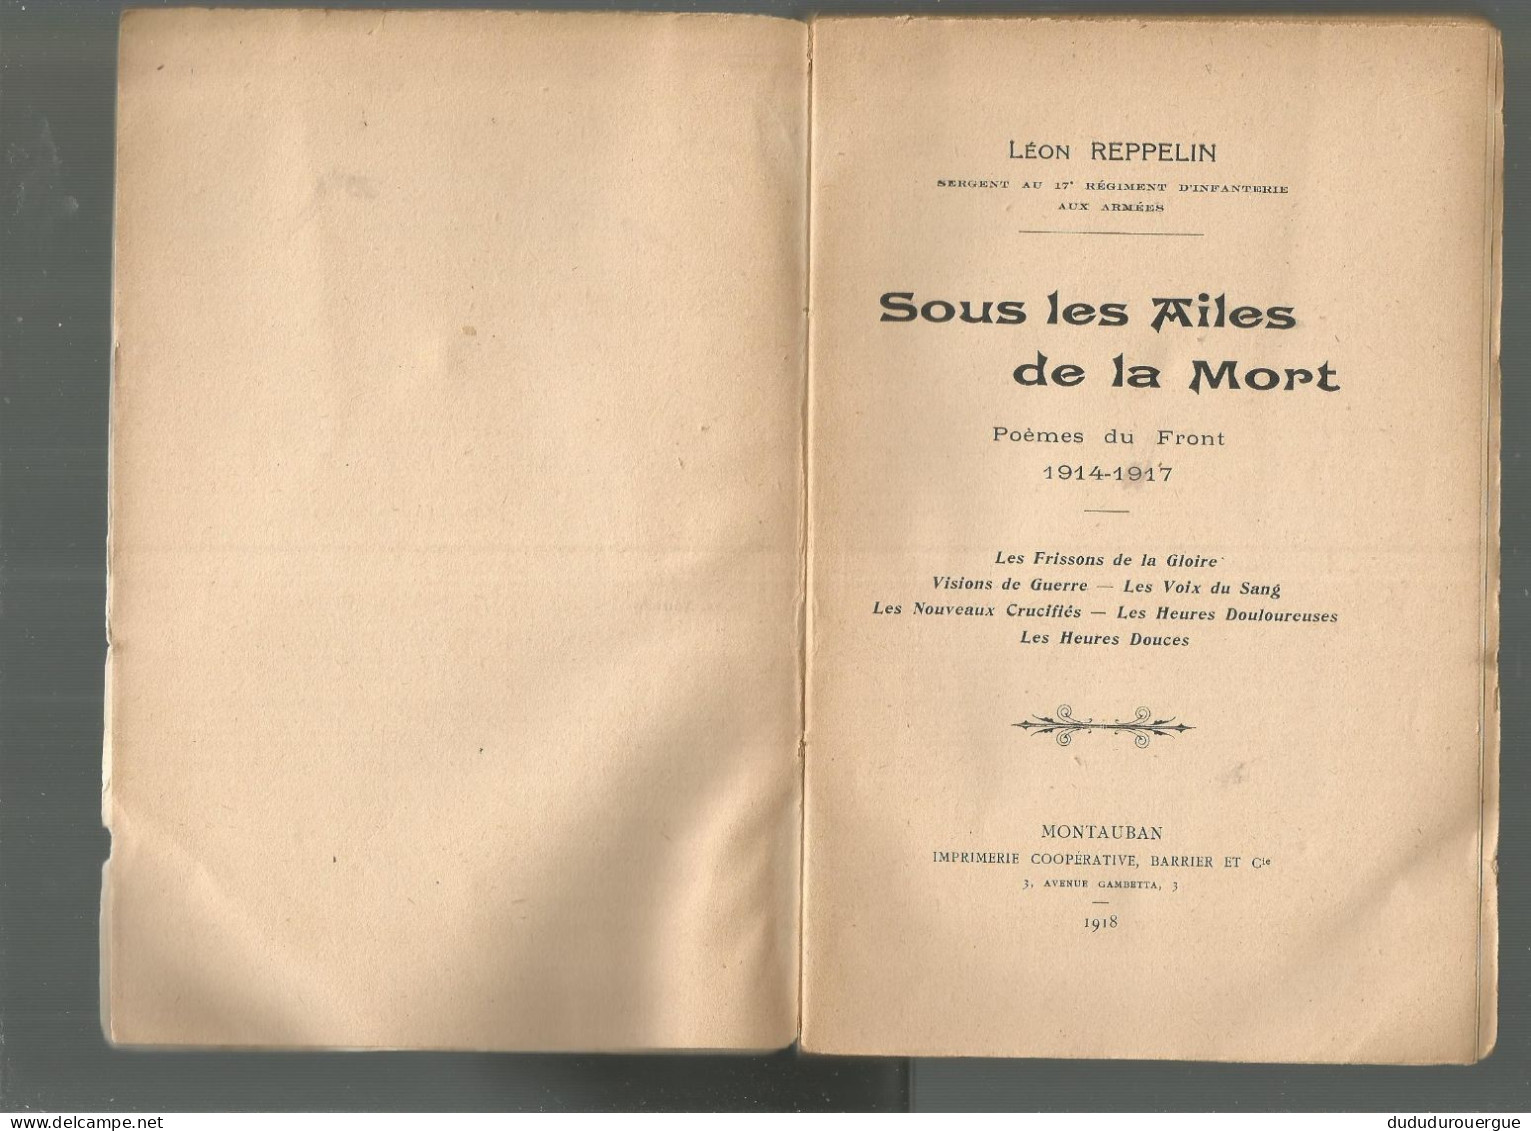 SOUS LES AILES DE LA MORT DE LEON REPPELIN , EDITION DES CHANTS TRICOLORES A LA REOLE EN GIRONDE - French Authors